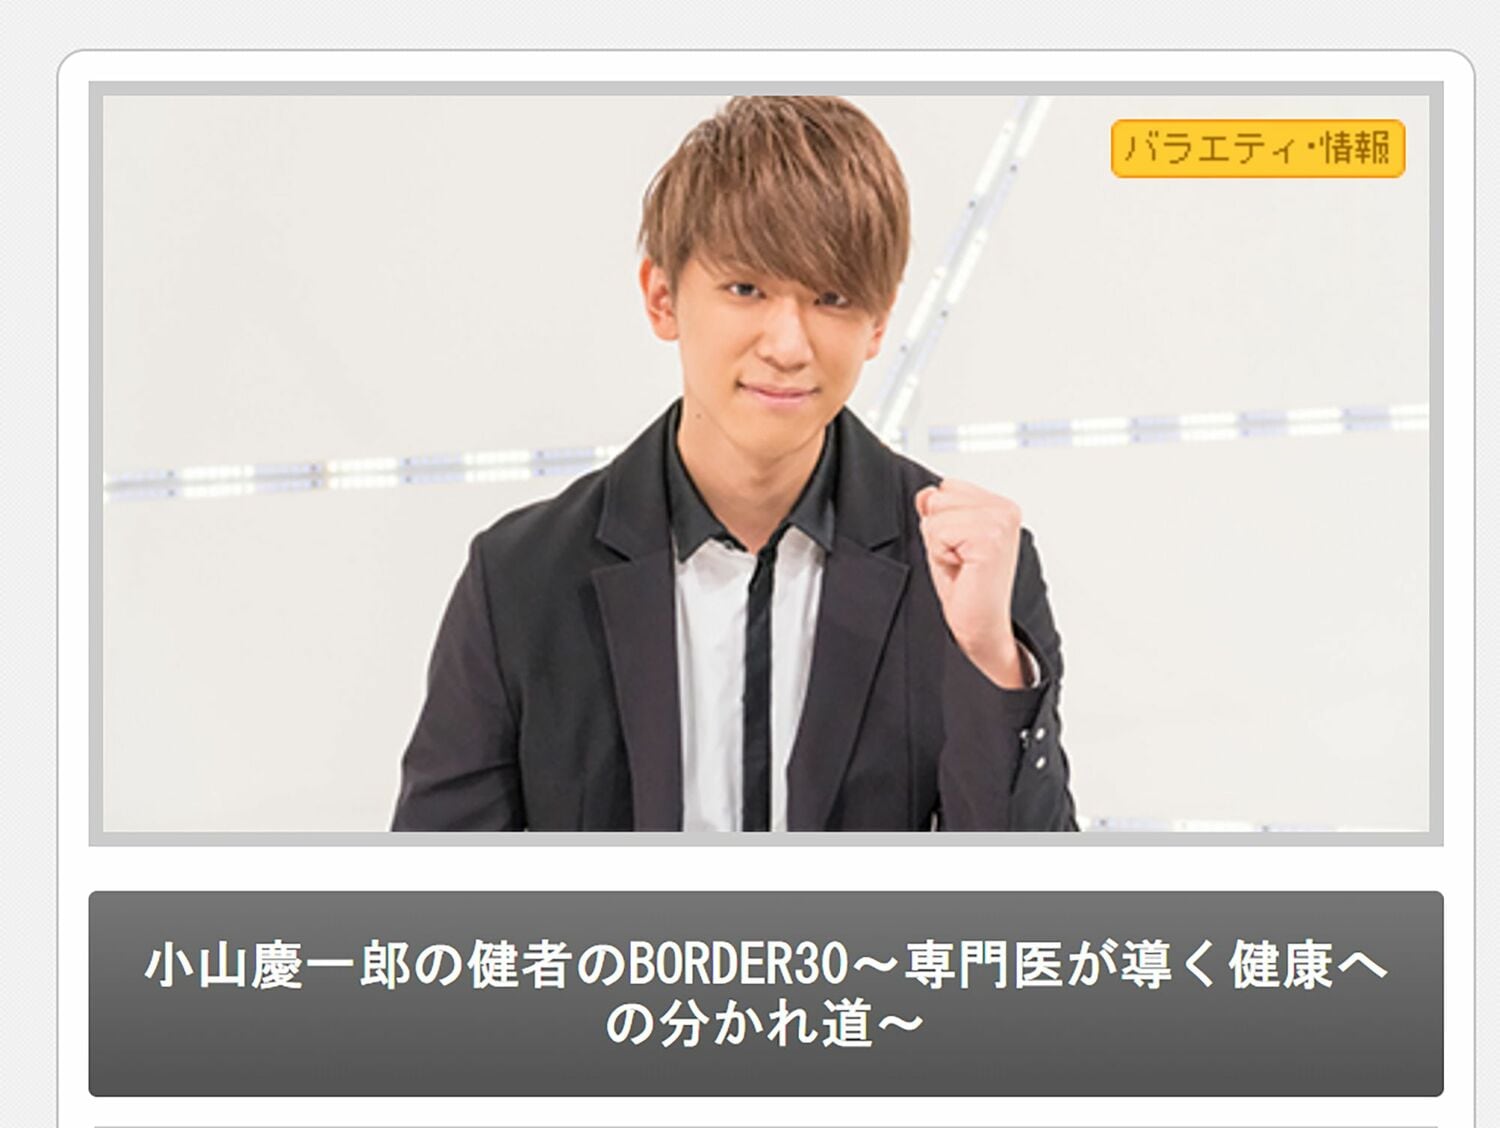 NEWS・小山慶一郎の初冠番組、スタジオセットに「お金ないんですかね…」の画像